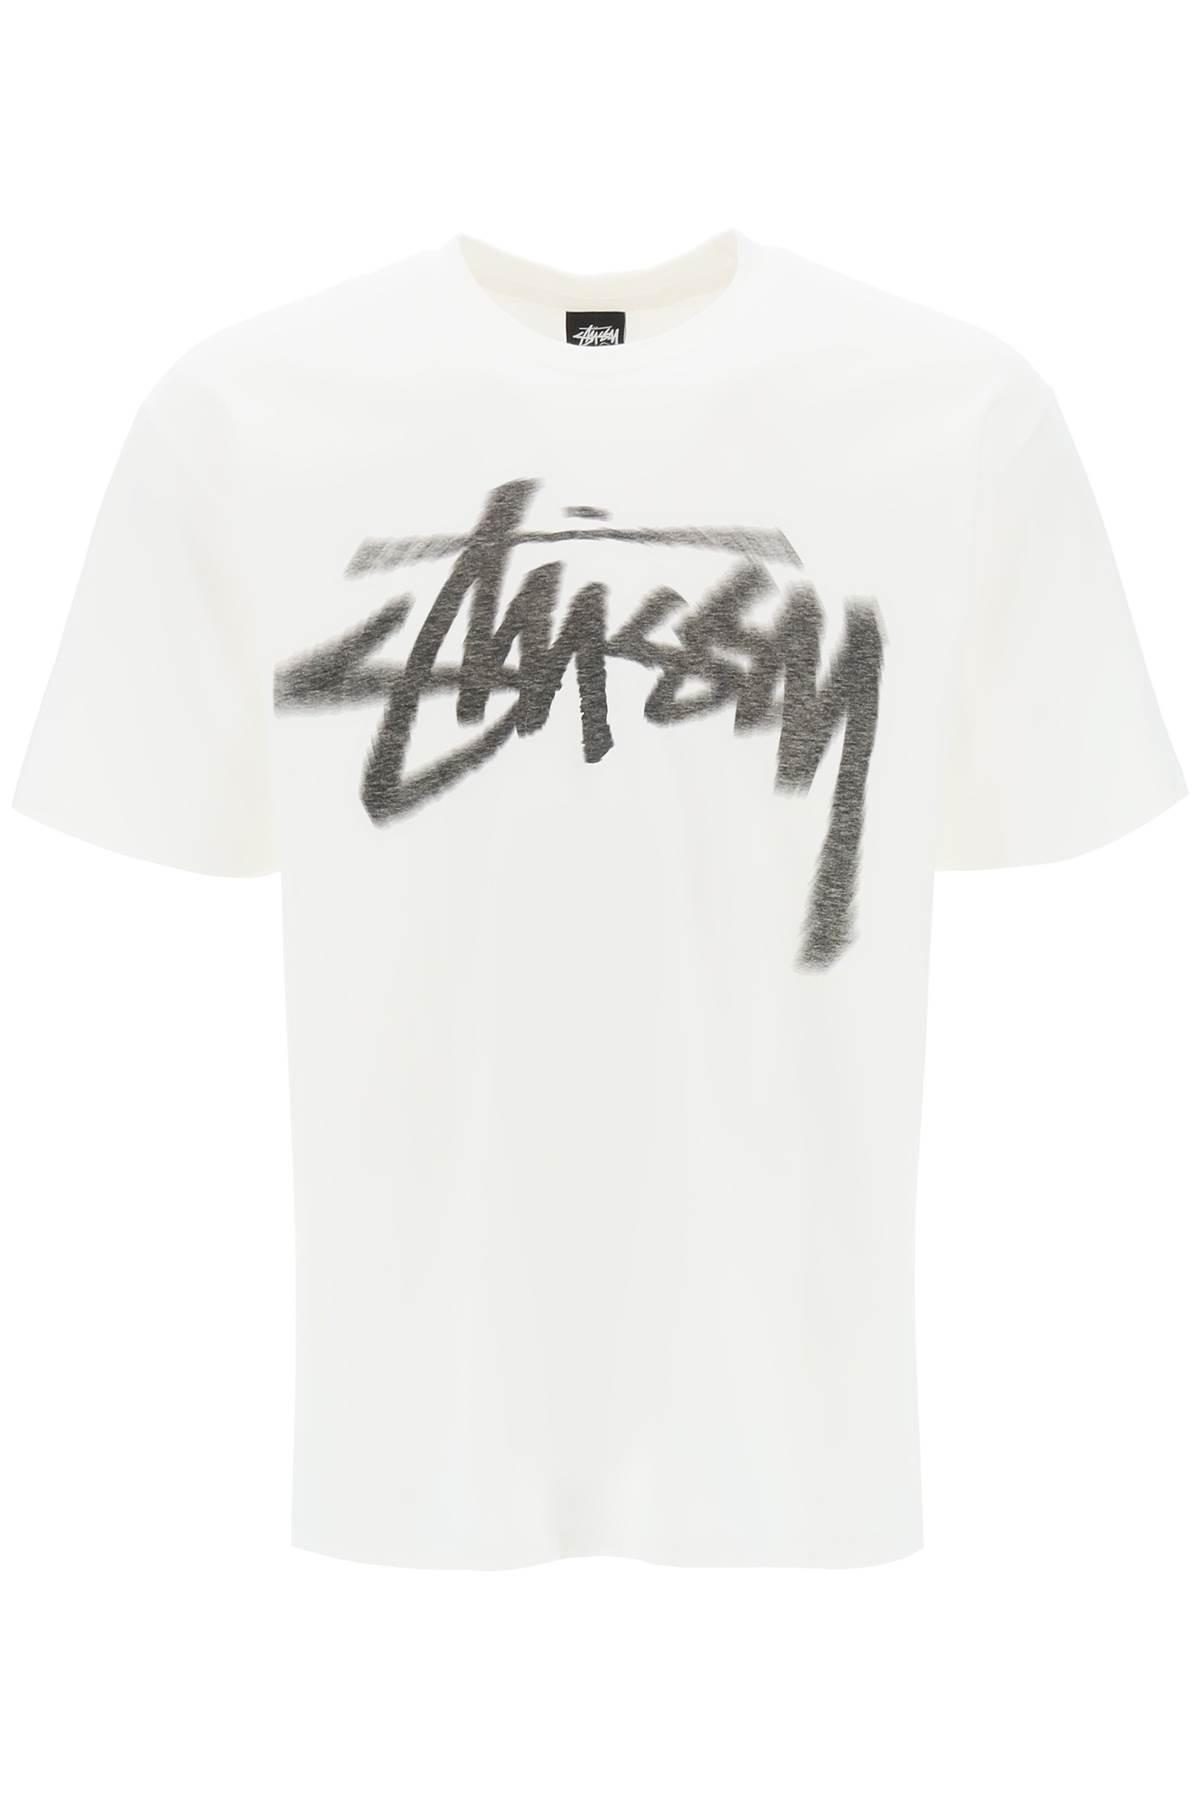 Stussy STUSSY T-shirt with dizzy logo print